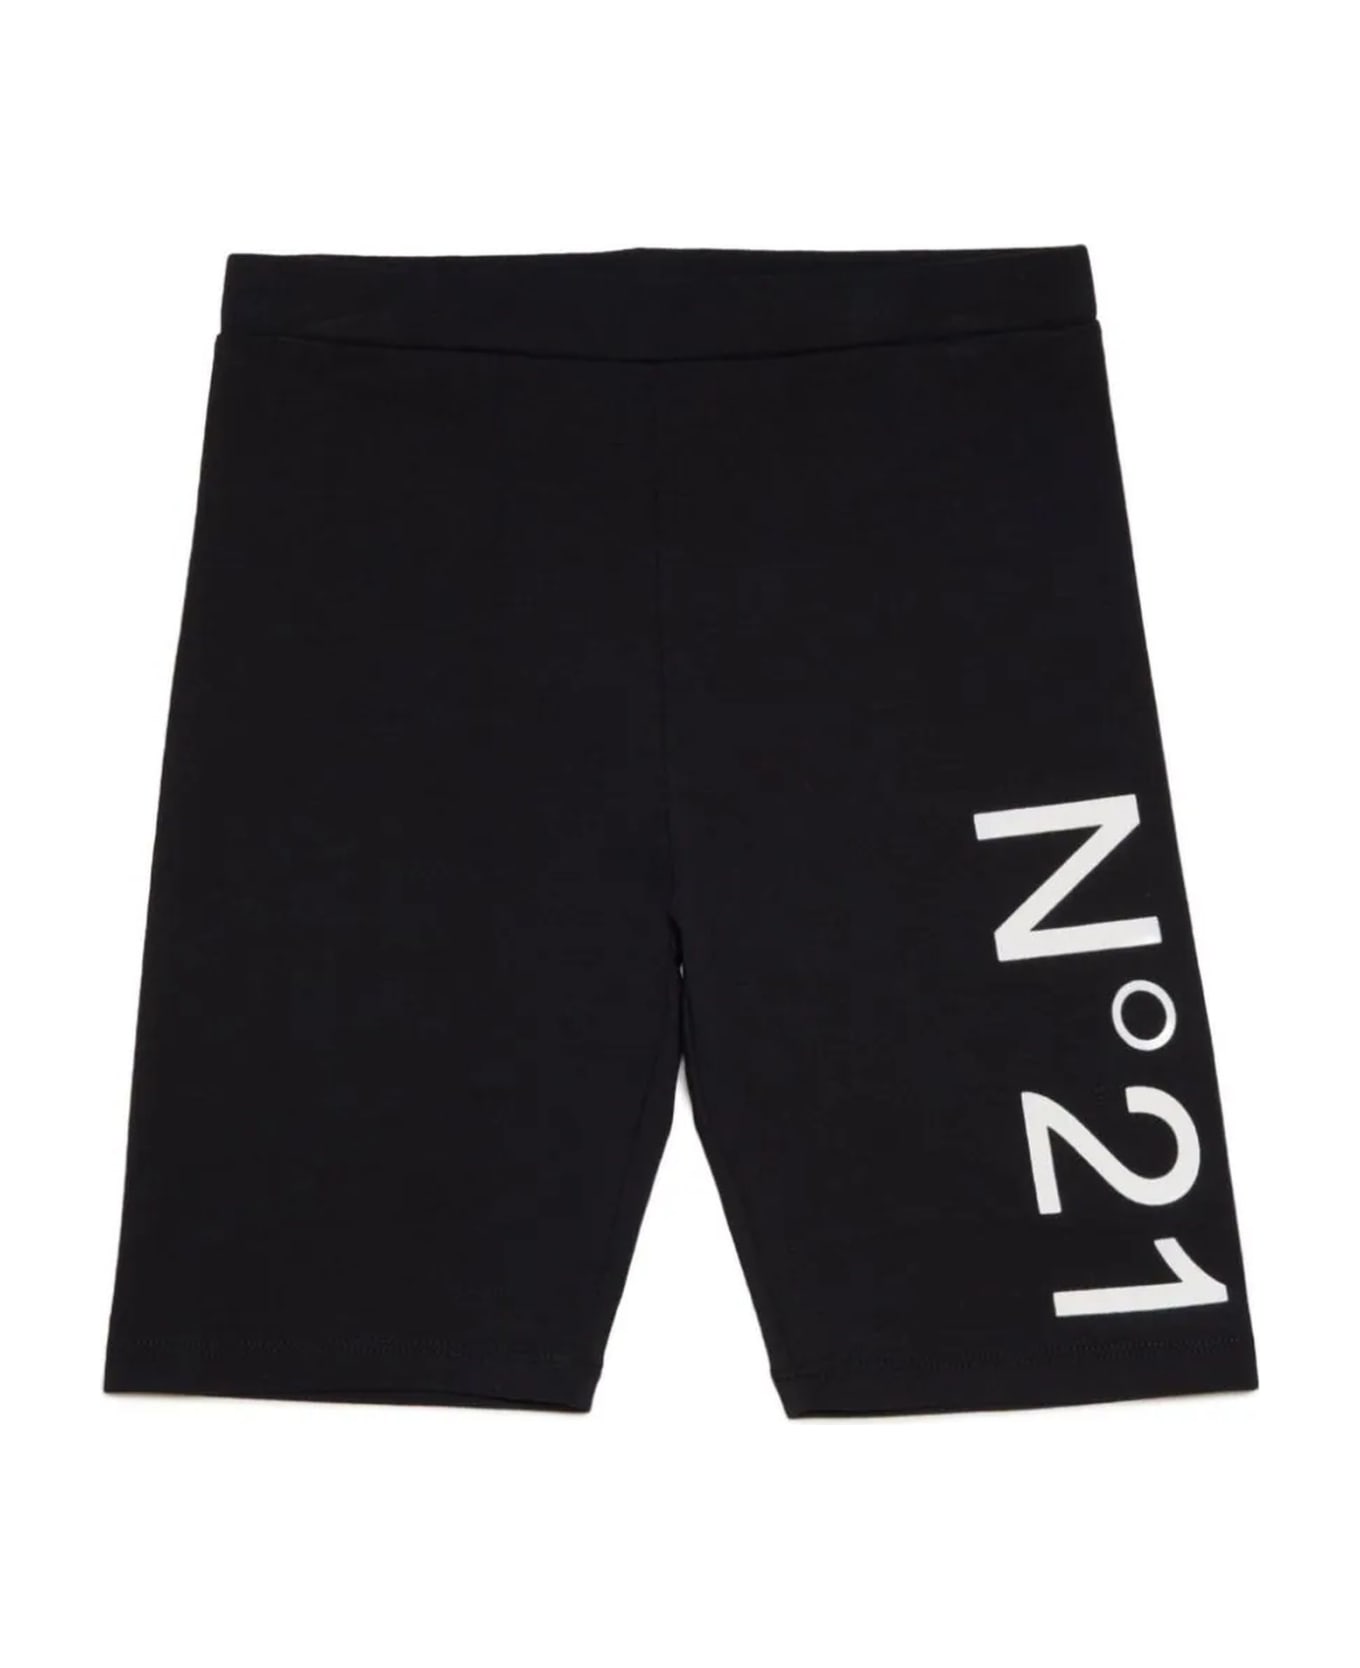 N.21 N°21 Trousers Black - Black ボトムス